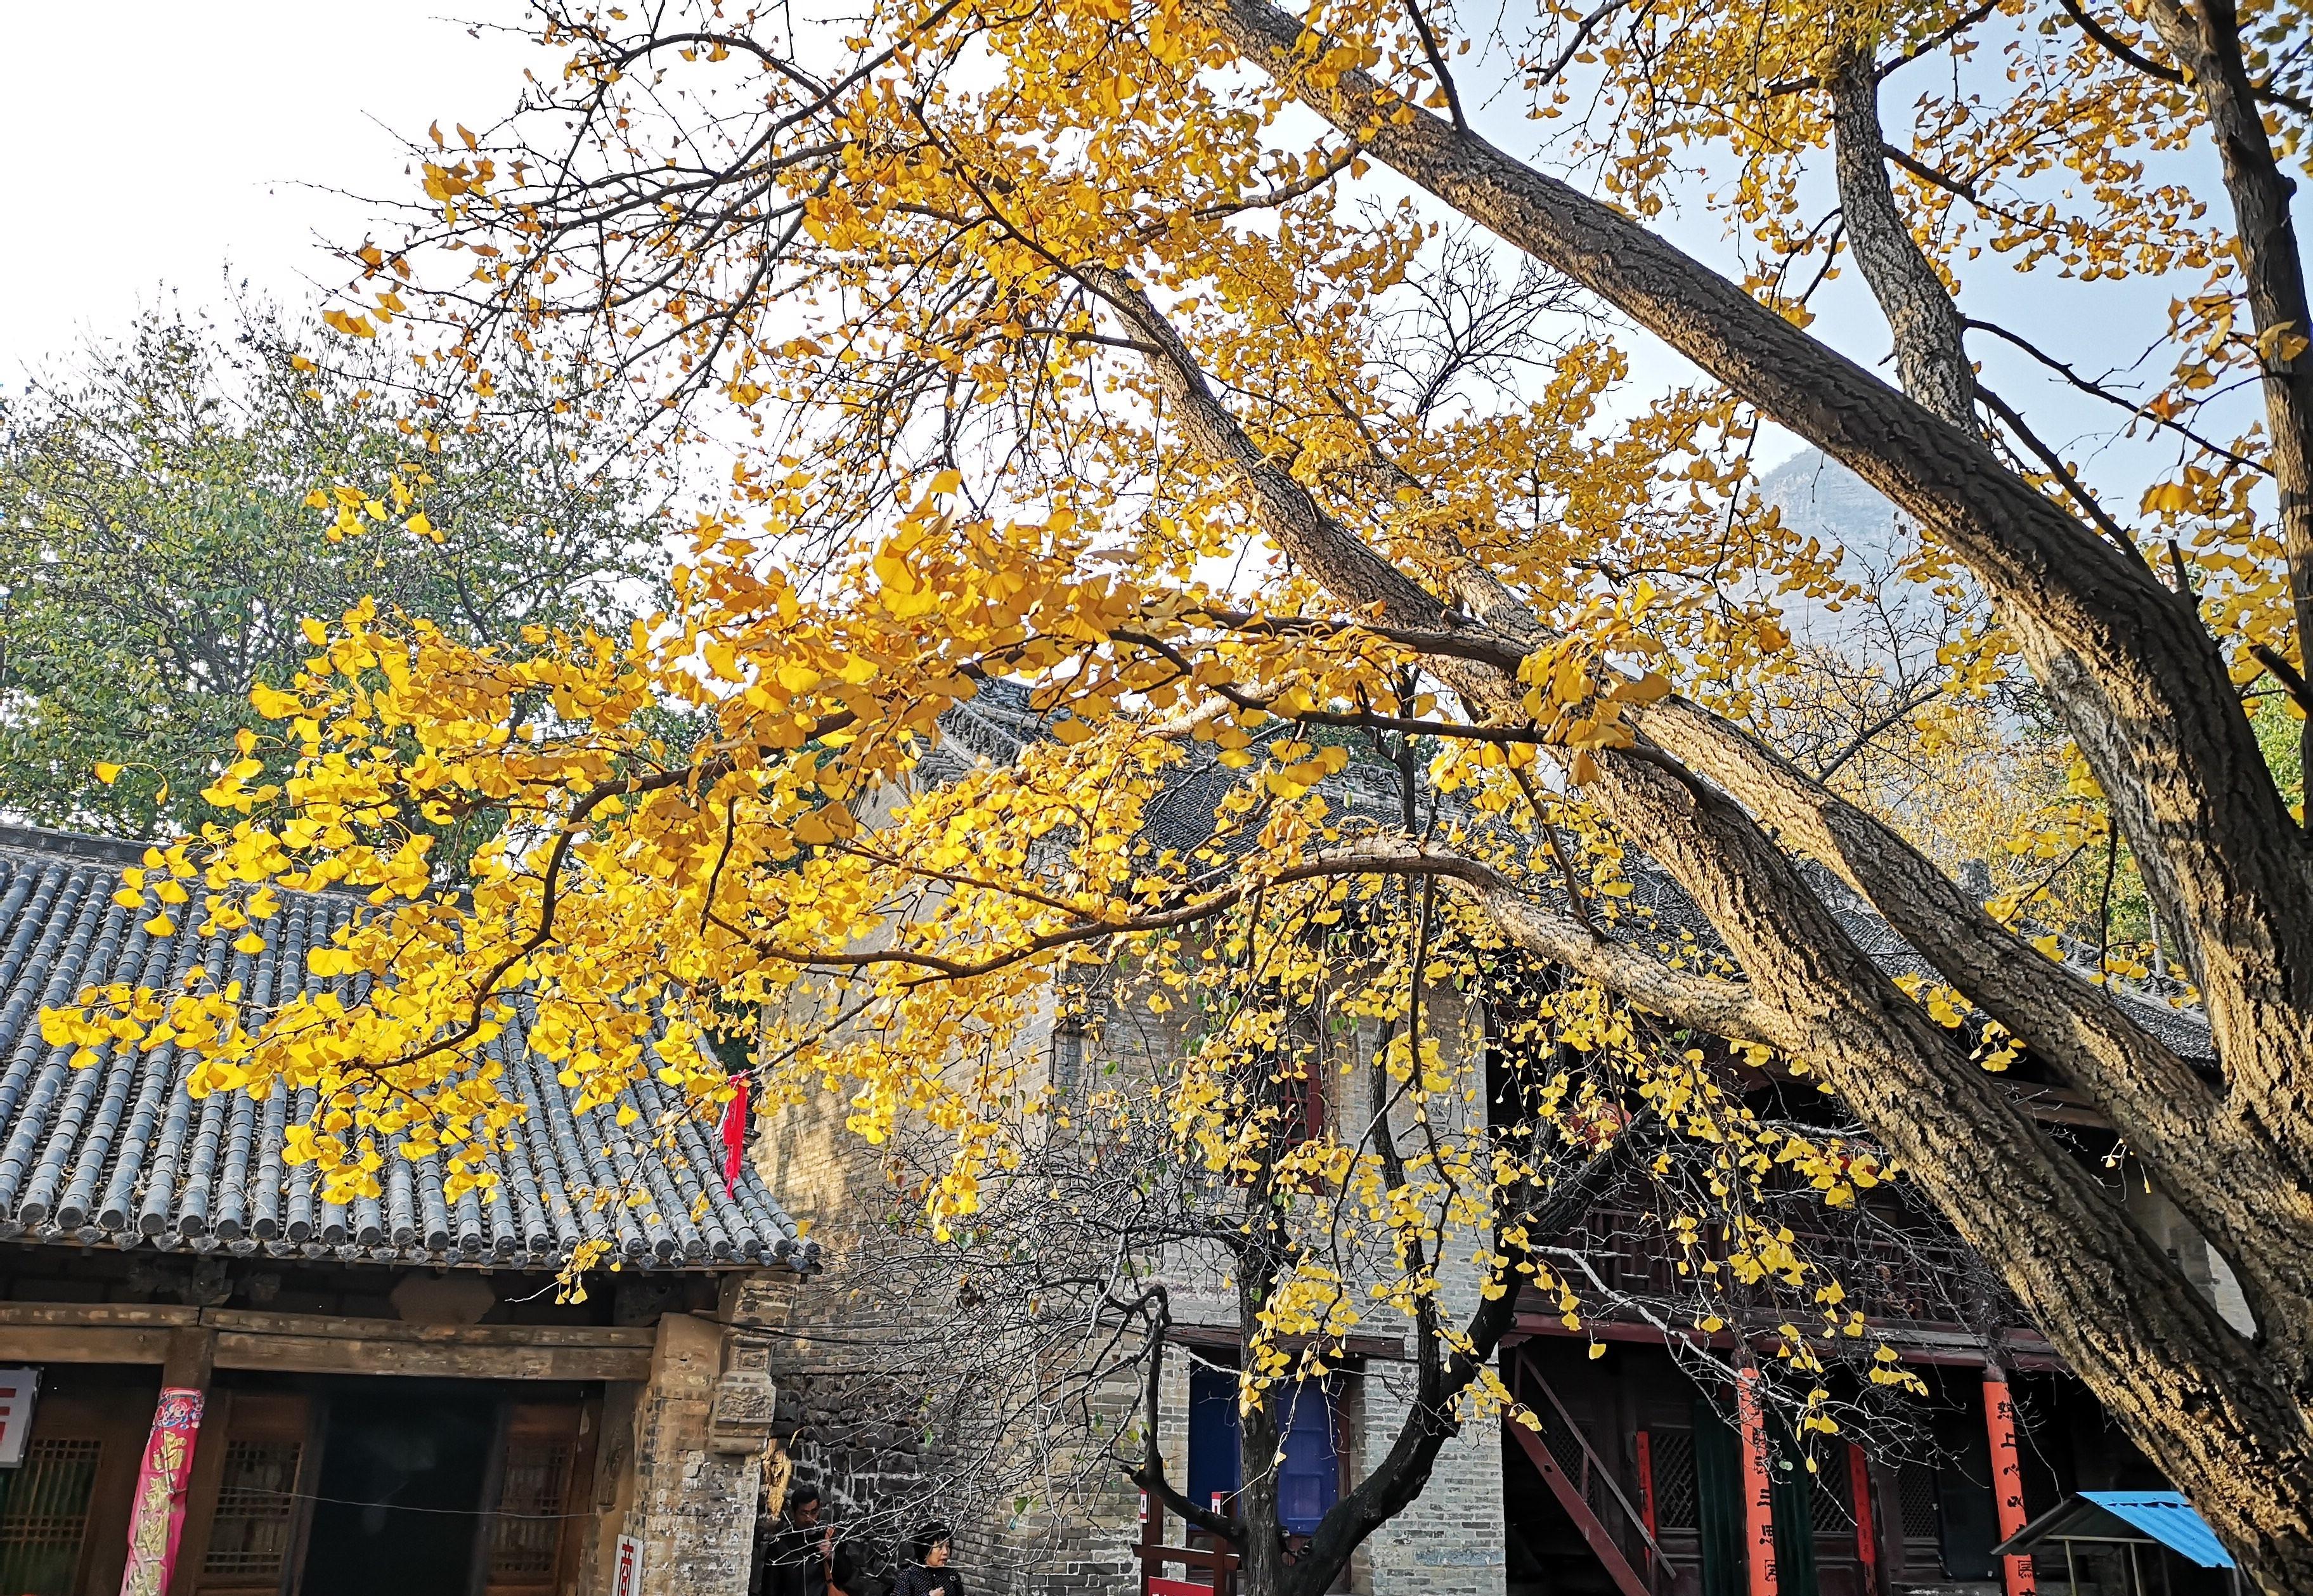 距离郑州一小时车程,辉县白云寺的千年银杏树,已进入最佳观赏期